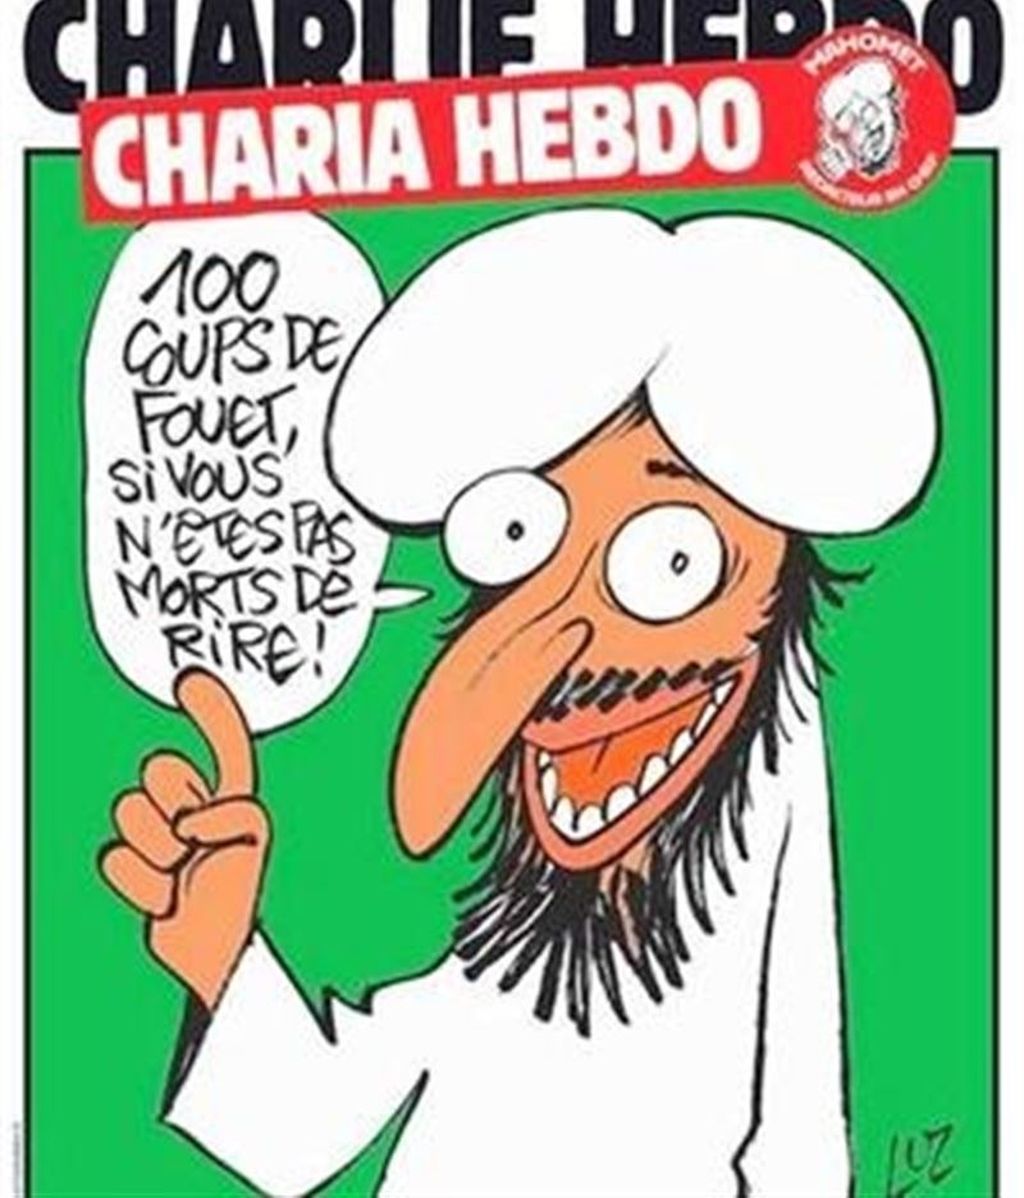 Las portadas más polémicas del semanario satírico 'Charlie Hebdo'